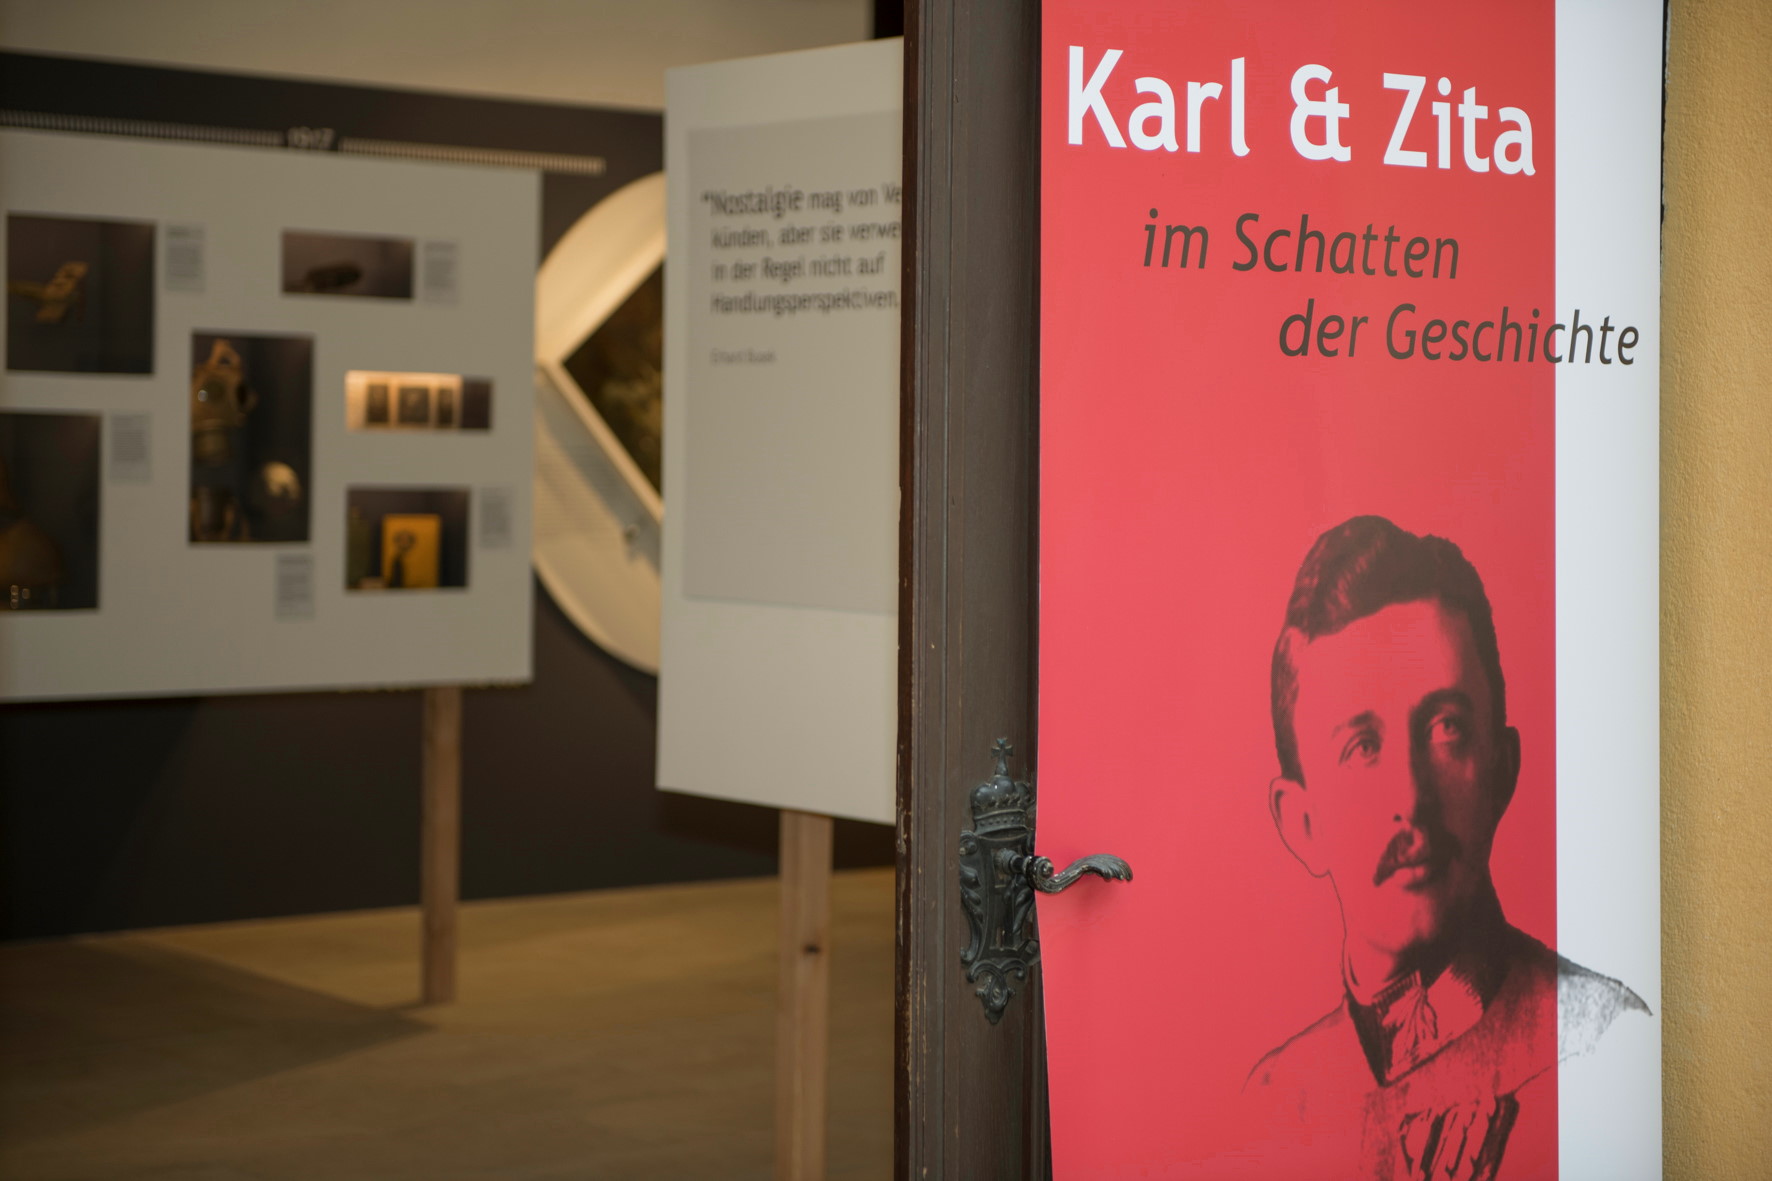 Eröffnung Ausstellung "Karl & Zita" 